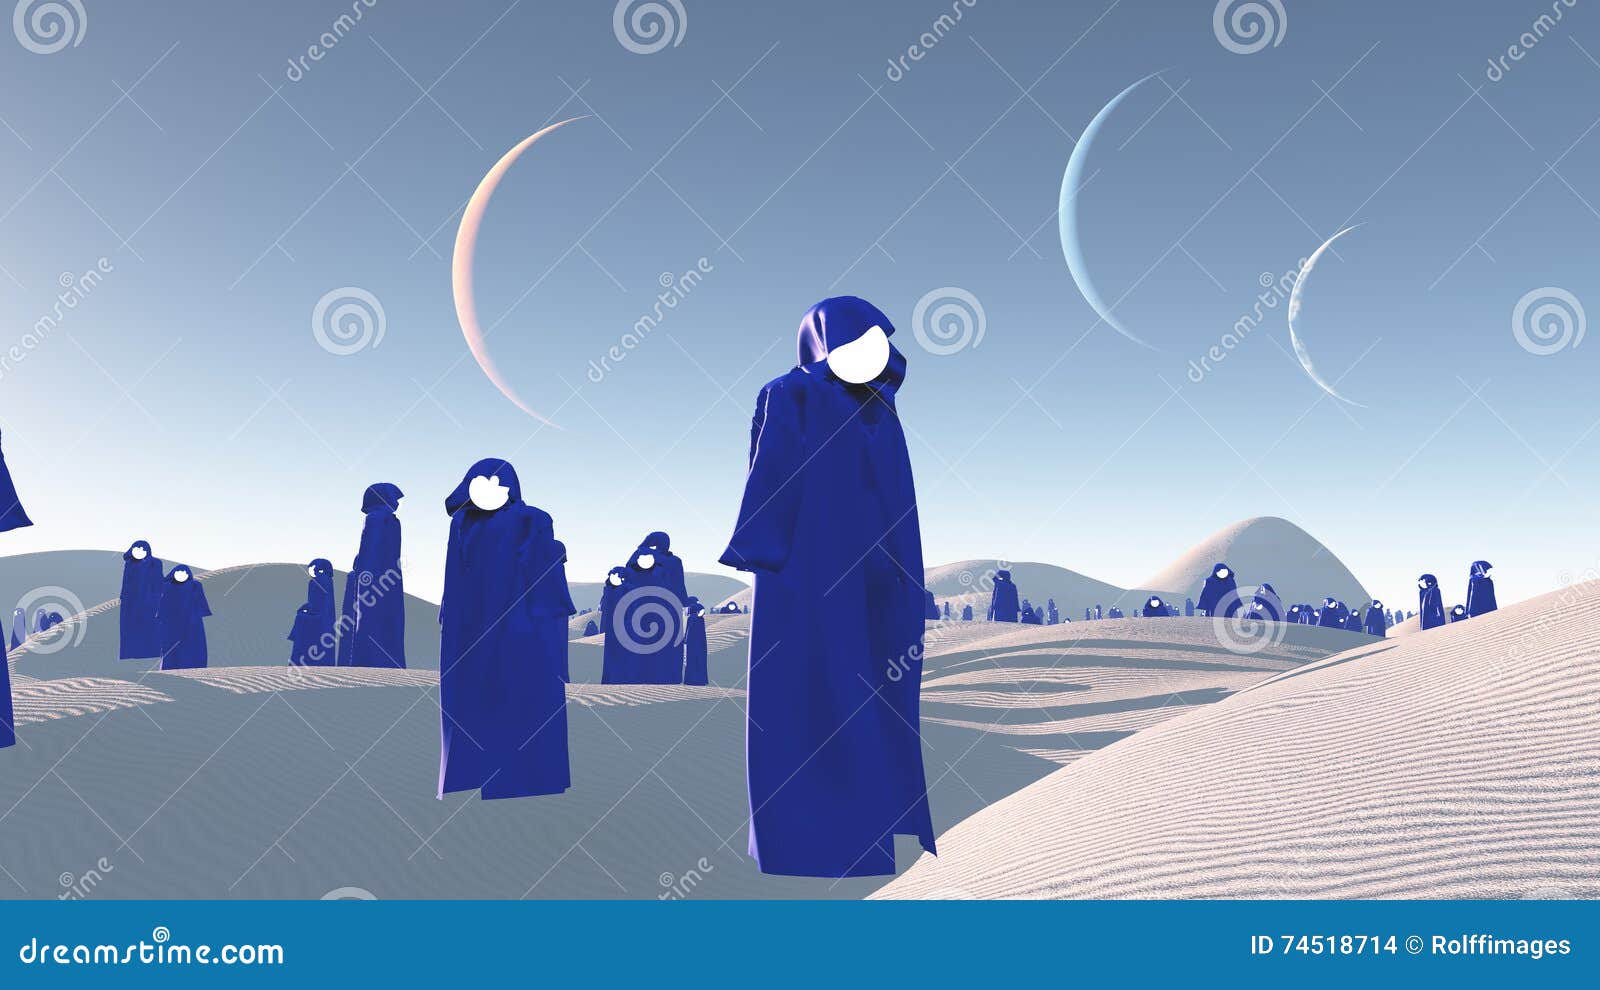 figures in blue robes in desert